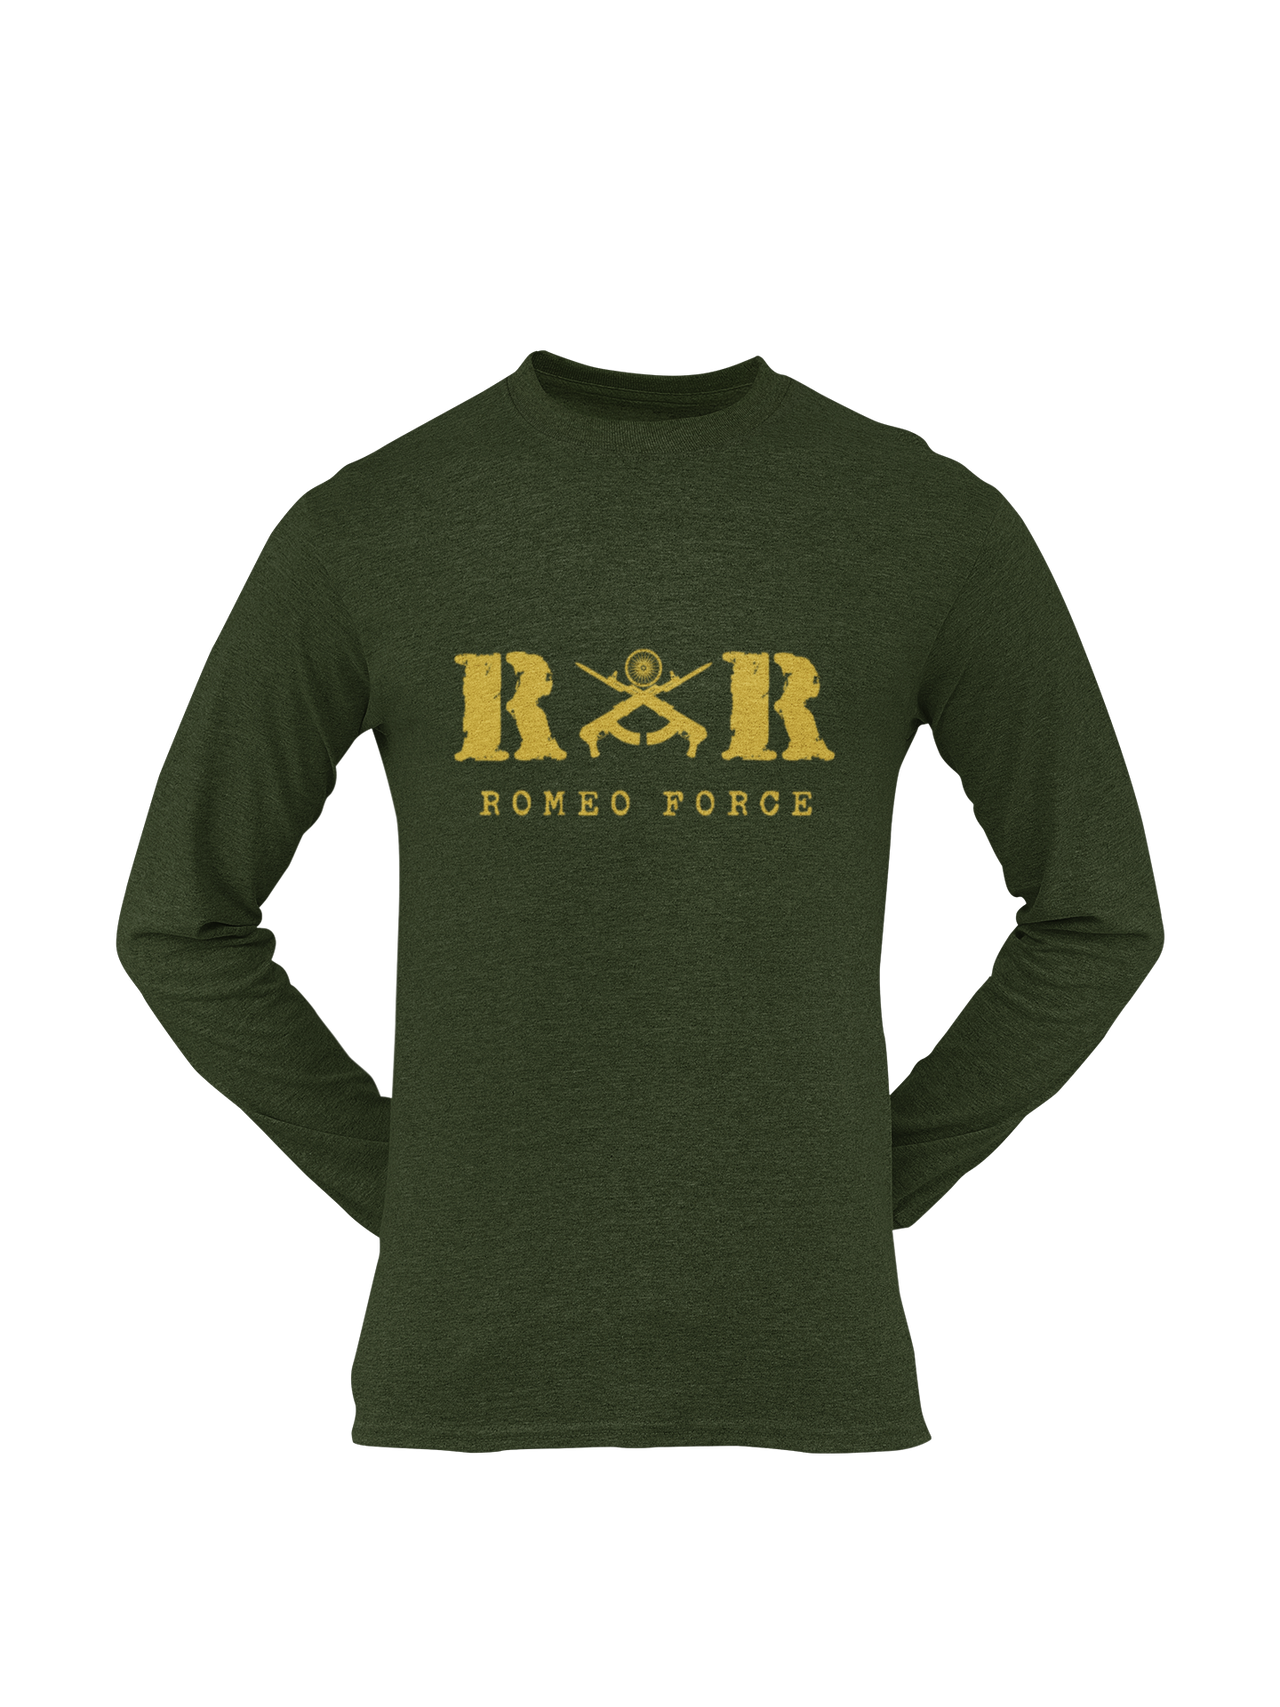 Rashtriya Rifles T-shirt - RR Romeo Force ( Men)